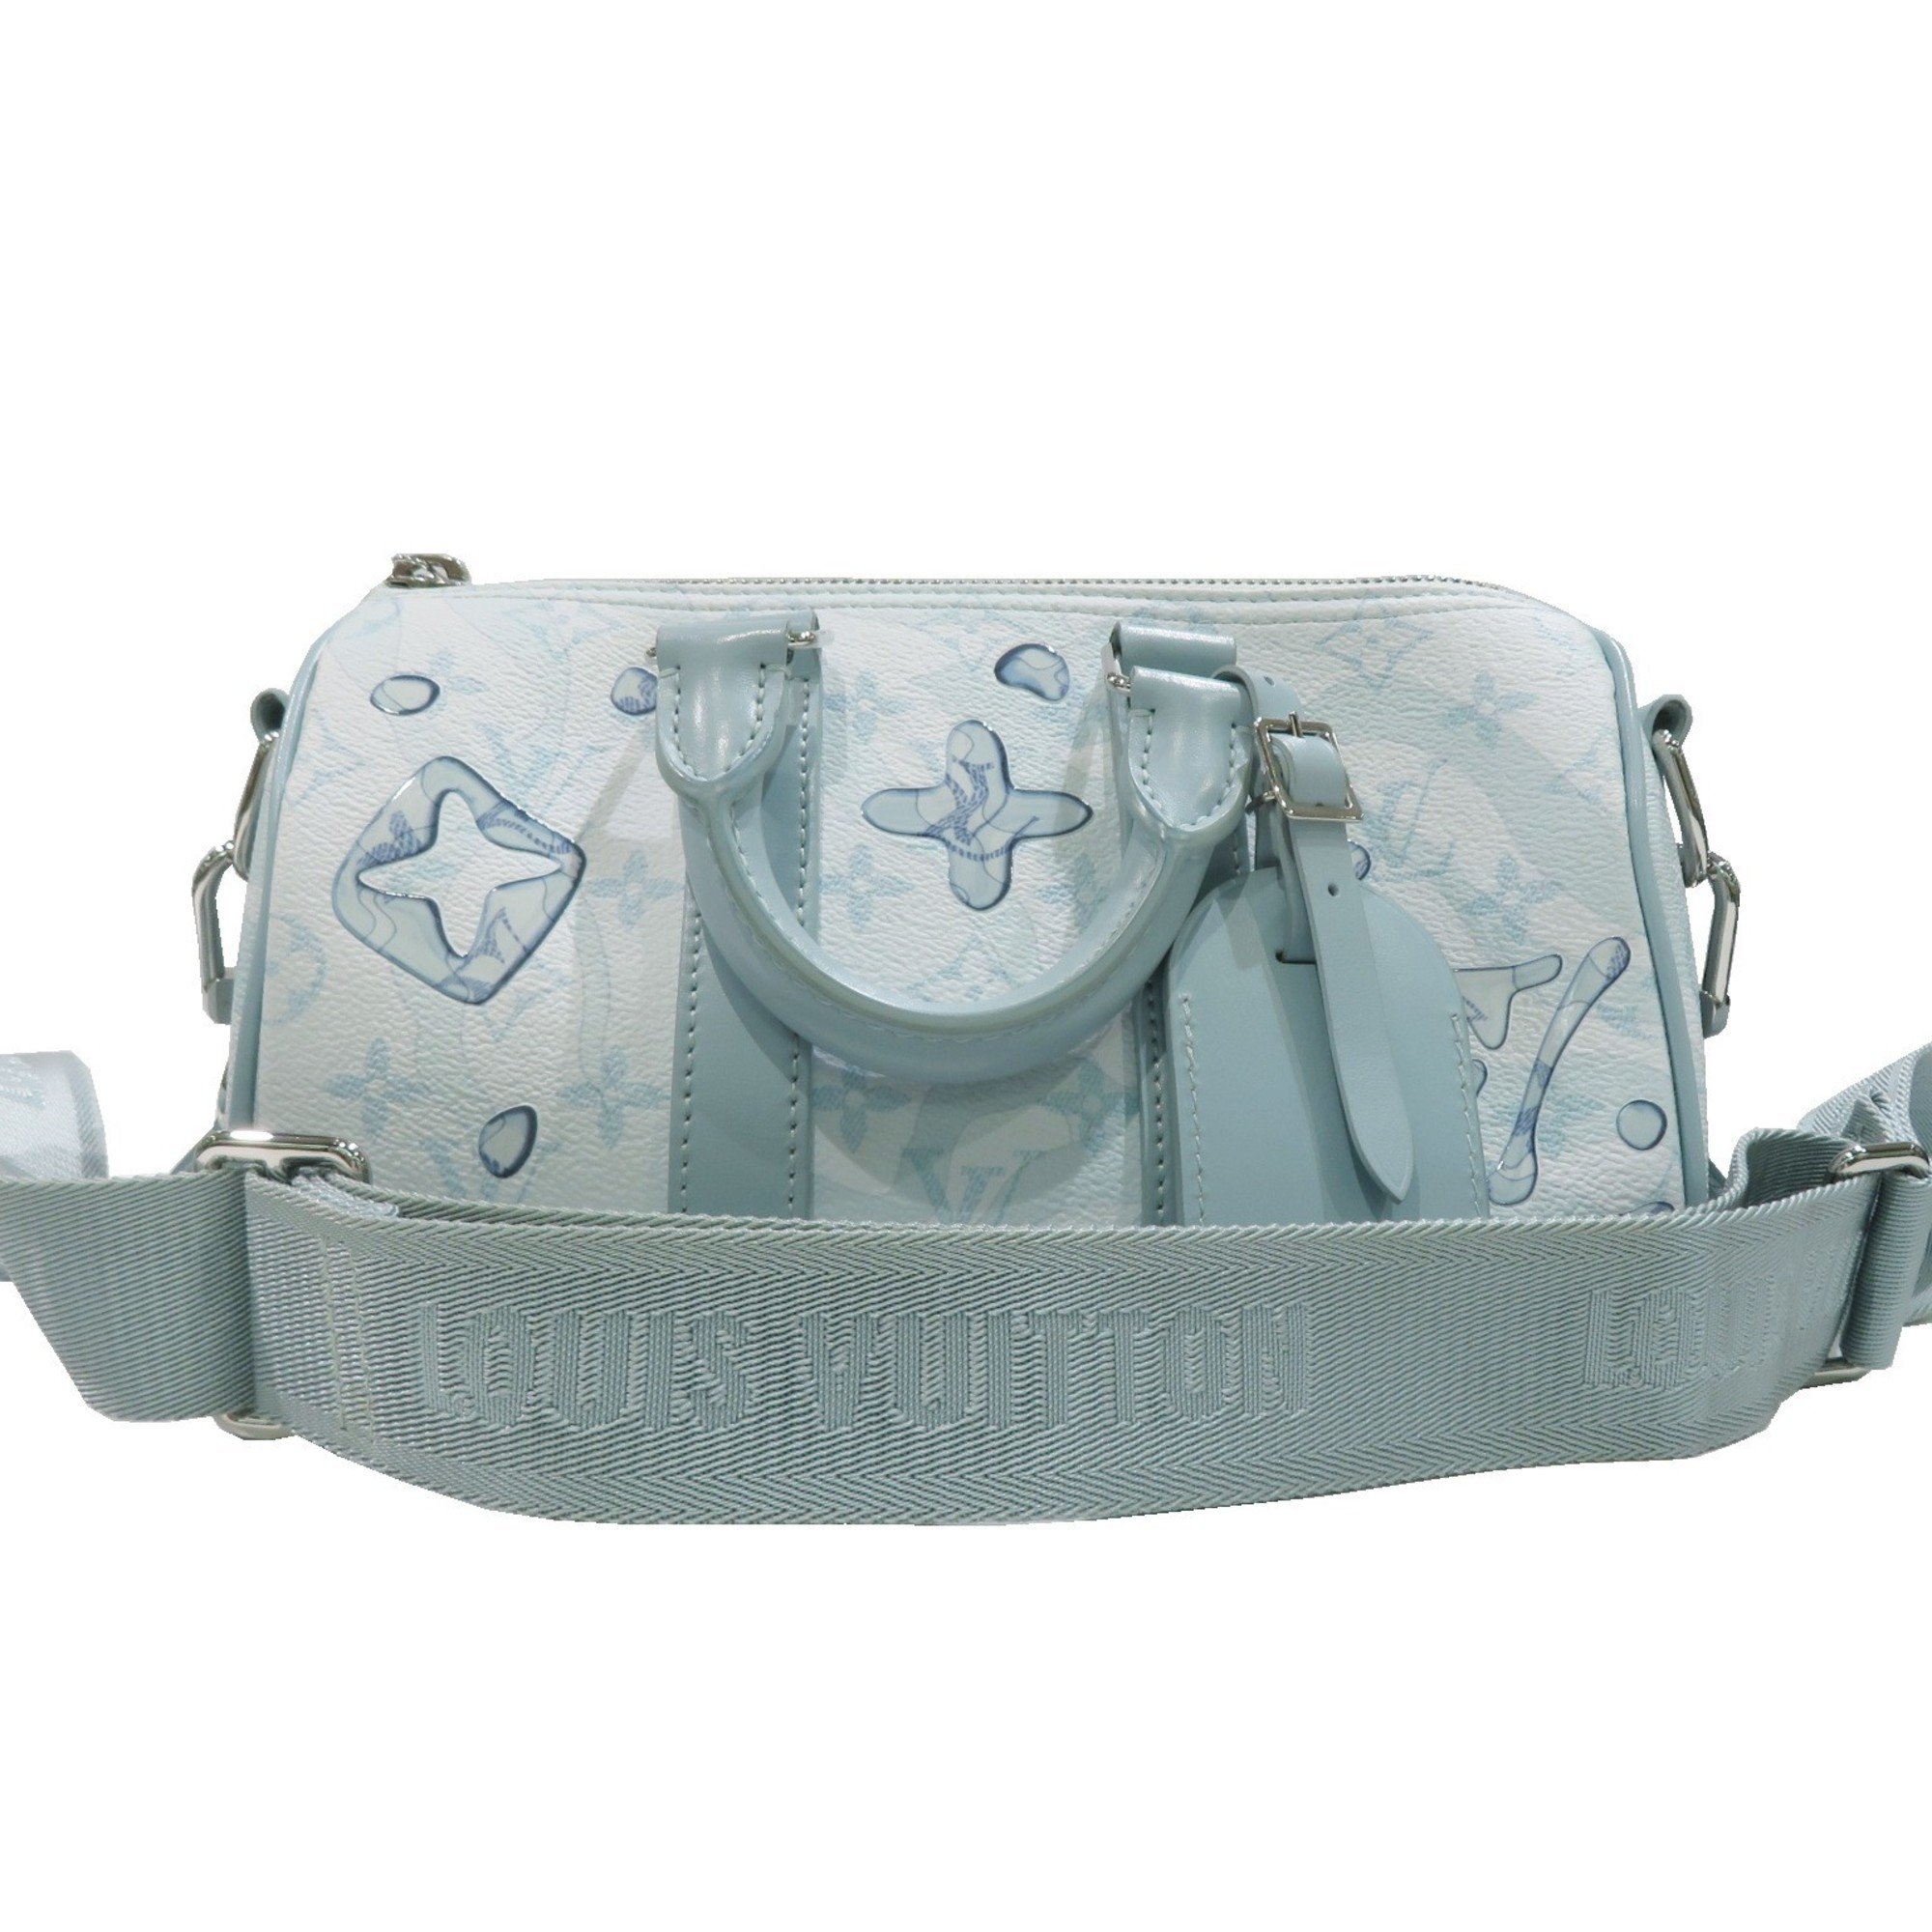 LOUIS VUITTON Keepall Bandouliere 25 Shoulder Bag M22527 Crystal Blue Monogram Aqua Garden Canvas Women's Men's Leather